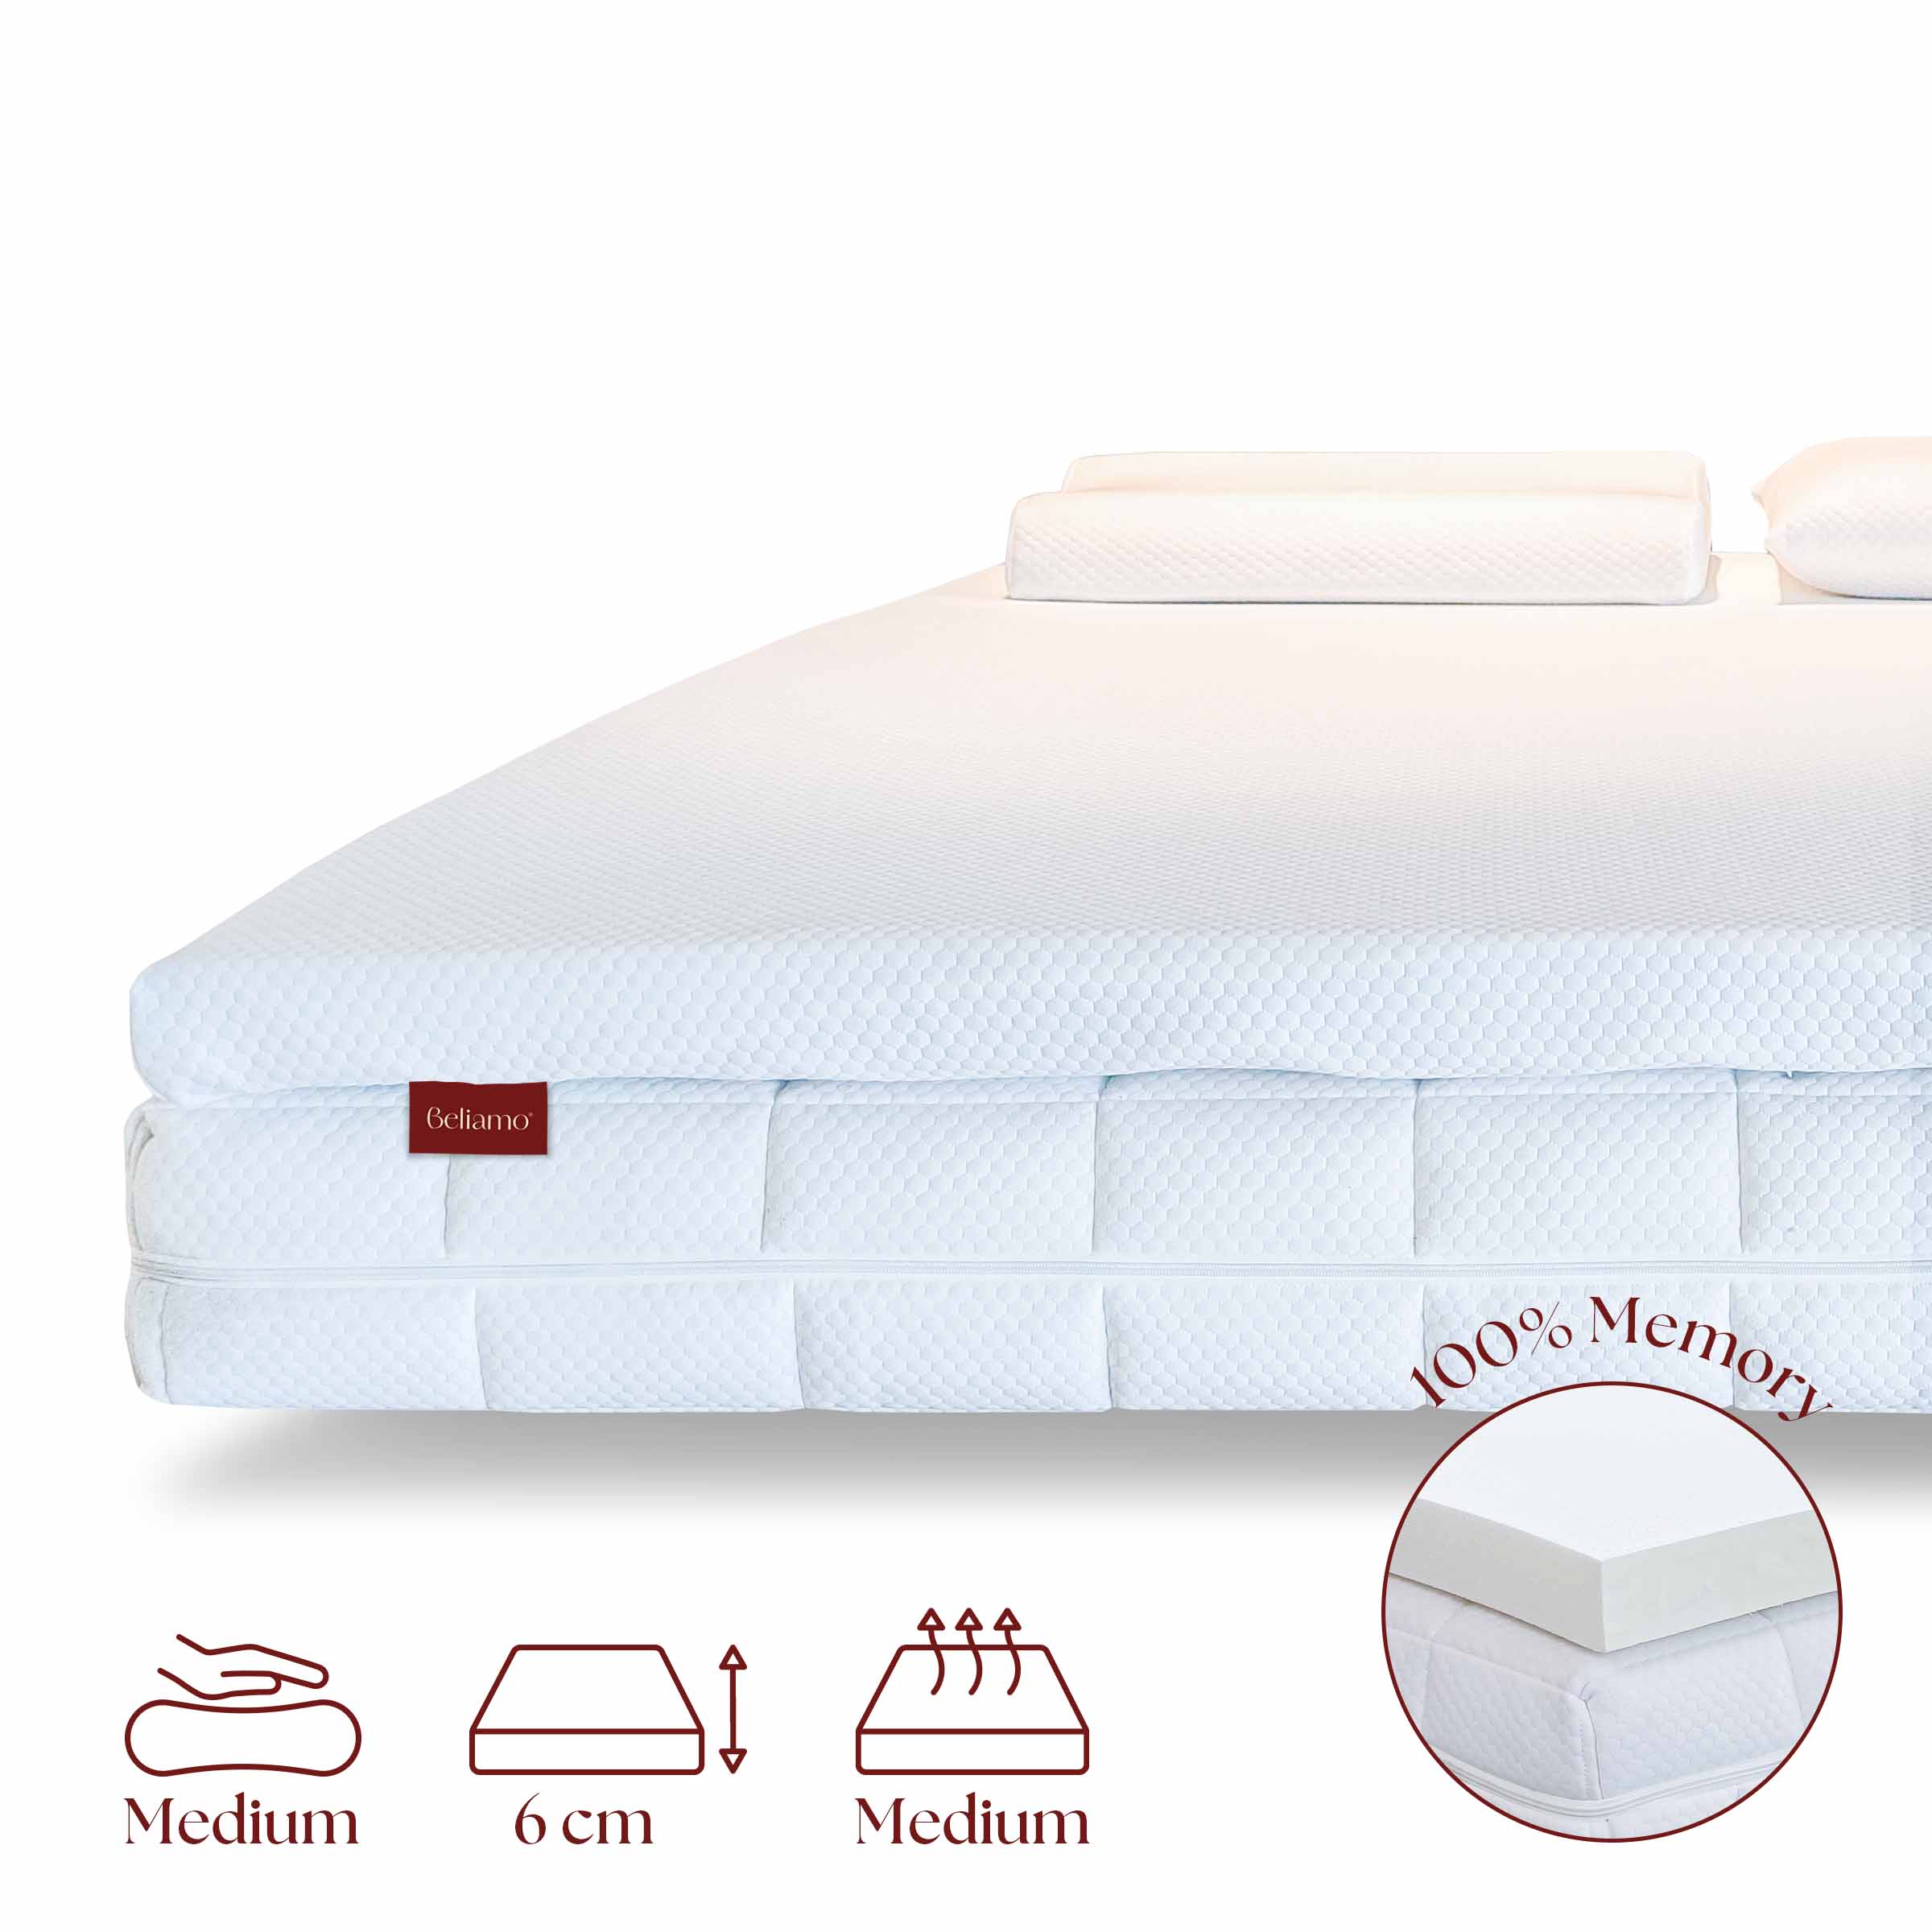 Topper MEMO TOPPER Memory Foam Extrapur®, altezza 6cm - Comfort extra per il tuo materasso su Beliamo.com